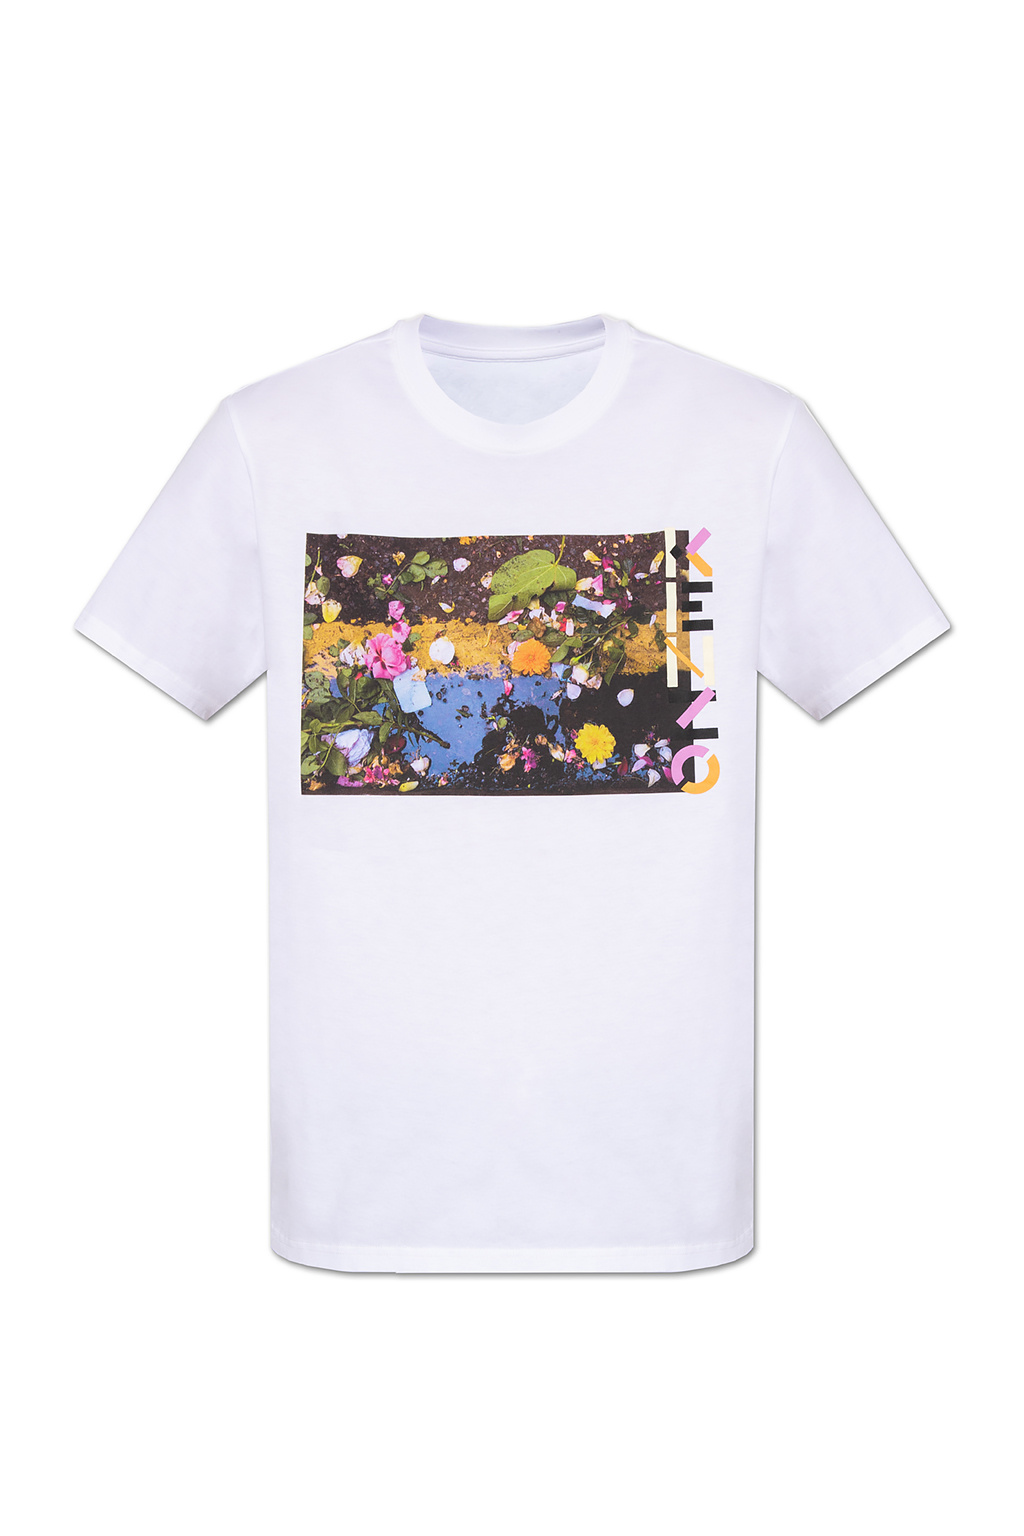 buurman periode creatief shirt | IetpShops - Origineel t-shirt met zeer geslaagde kleuren - Men's  Clothing | Kenzo Printed T